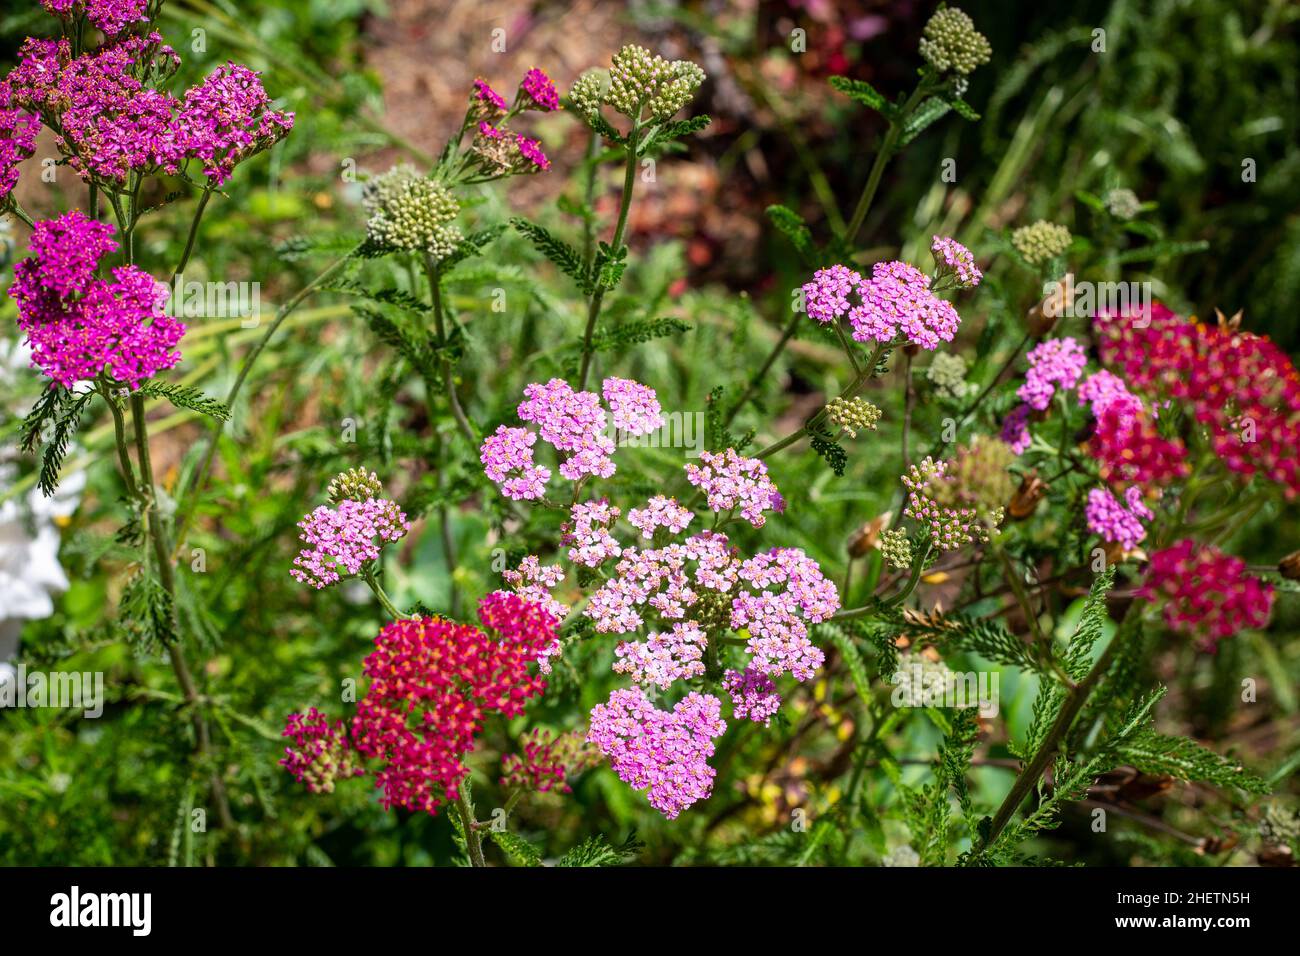 Arrow ornamentale, Cerise Queen, fiorito in un giardino cottage in estate, è ideale per fiori recisi e mazzi. Canterbury, Nuova Zelanda Foto Stock